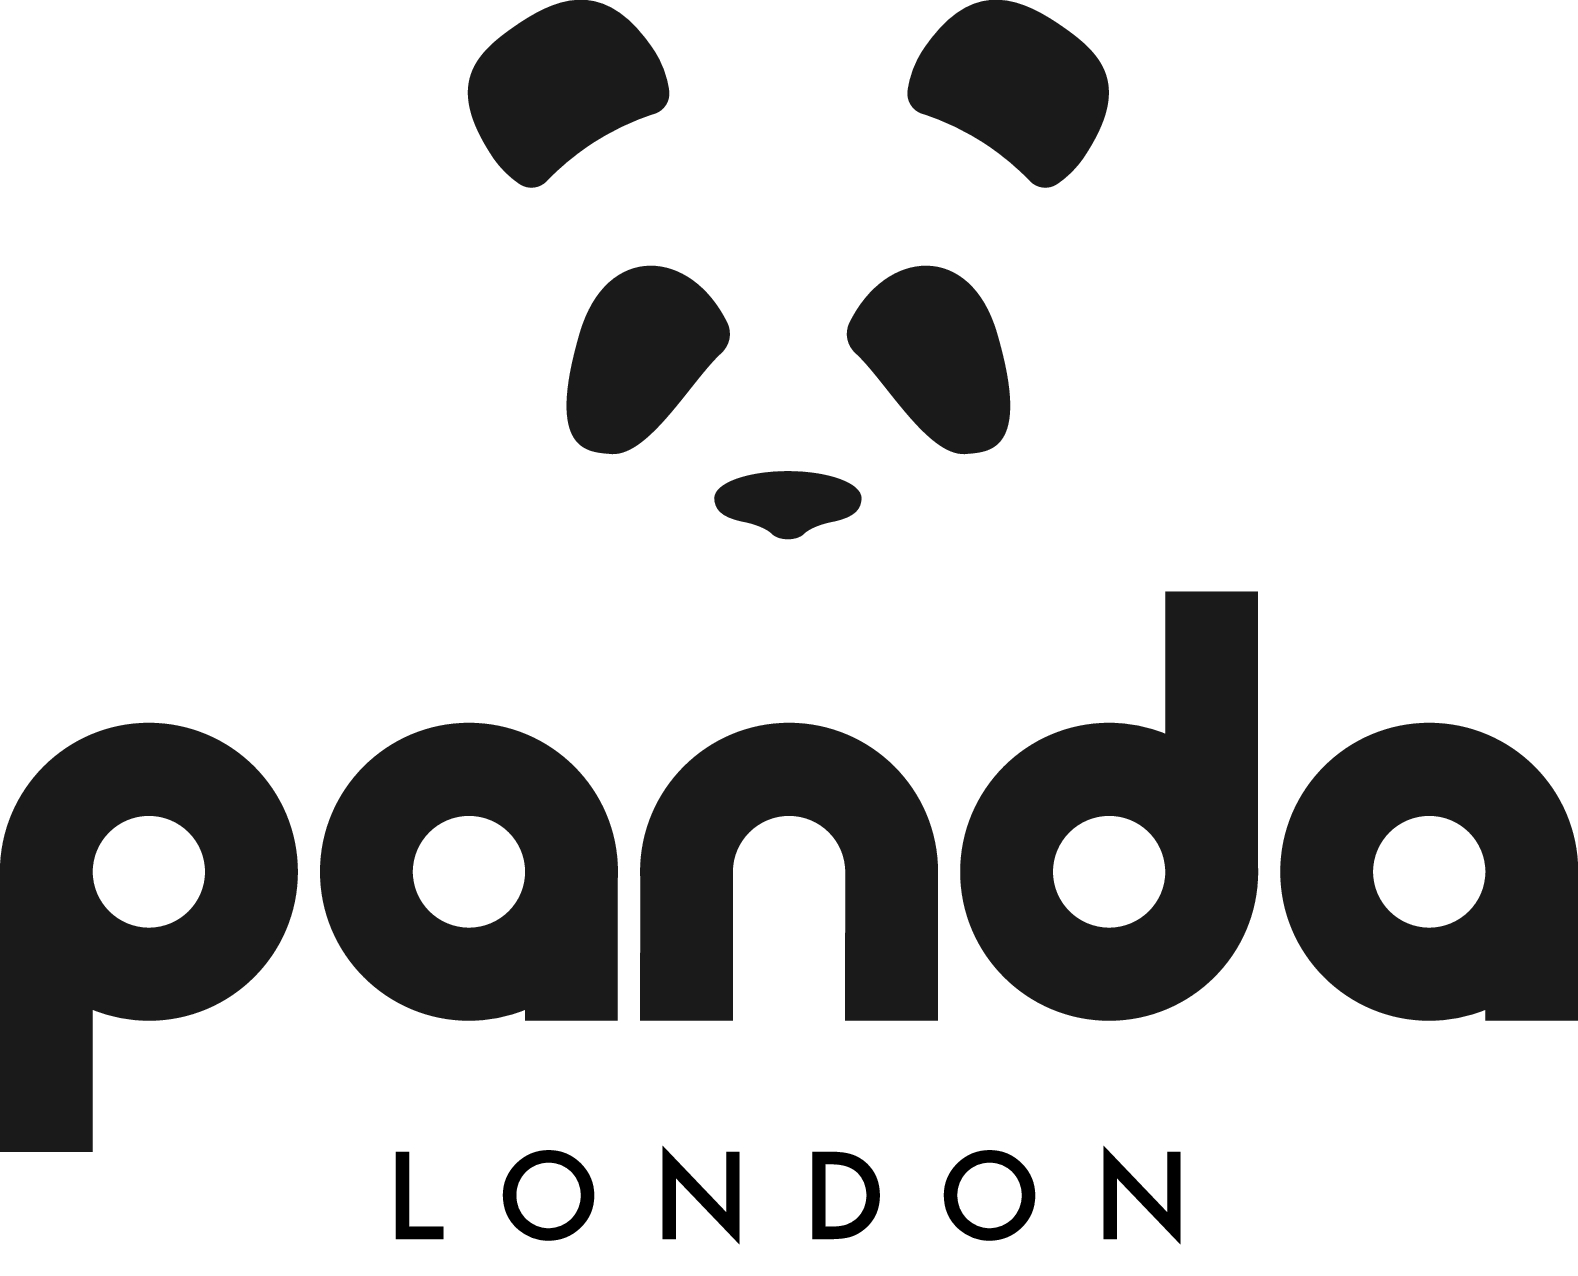 Panda London 쿠폰 